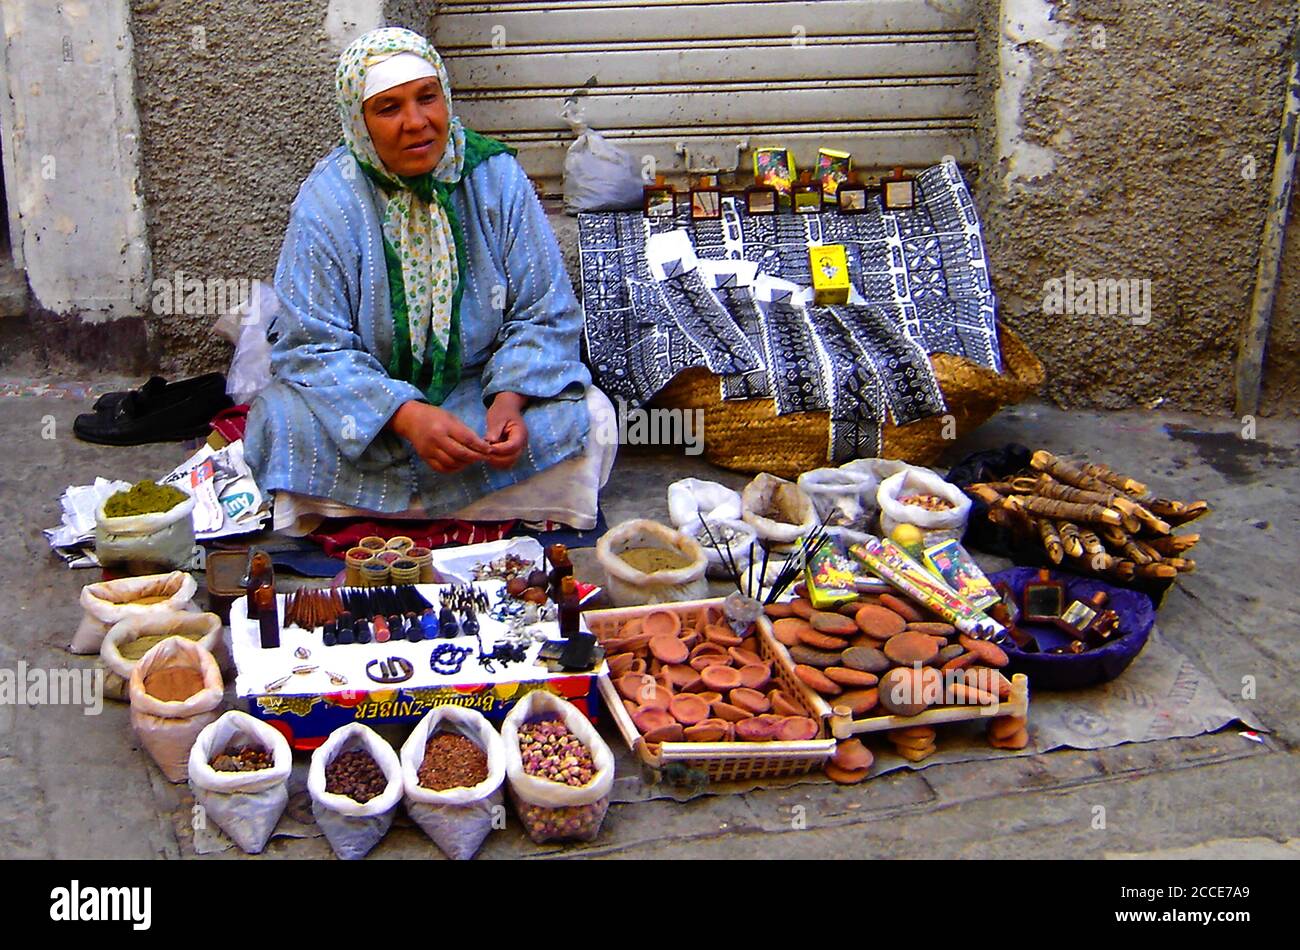 Oktober 2005 - die Medina ist ein von Mauern umschlossenes Gebiet mit einem Labyrinth von Souks (Marktplätzen), Gassen, Geschäften und Handwerkern, die ihre Waren verkaufen. Beim Kauf geht es immer um Feilschen. Dieses Foto zeigt eine Frau, die auf dem Boden sitzt und ihre Waren verkauft (Gewürze, Räucherstäbchen, Nüsse, Parfums, Nicks-Bugs usw.) Stockfoto